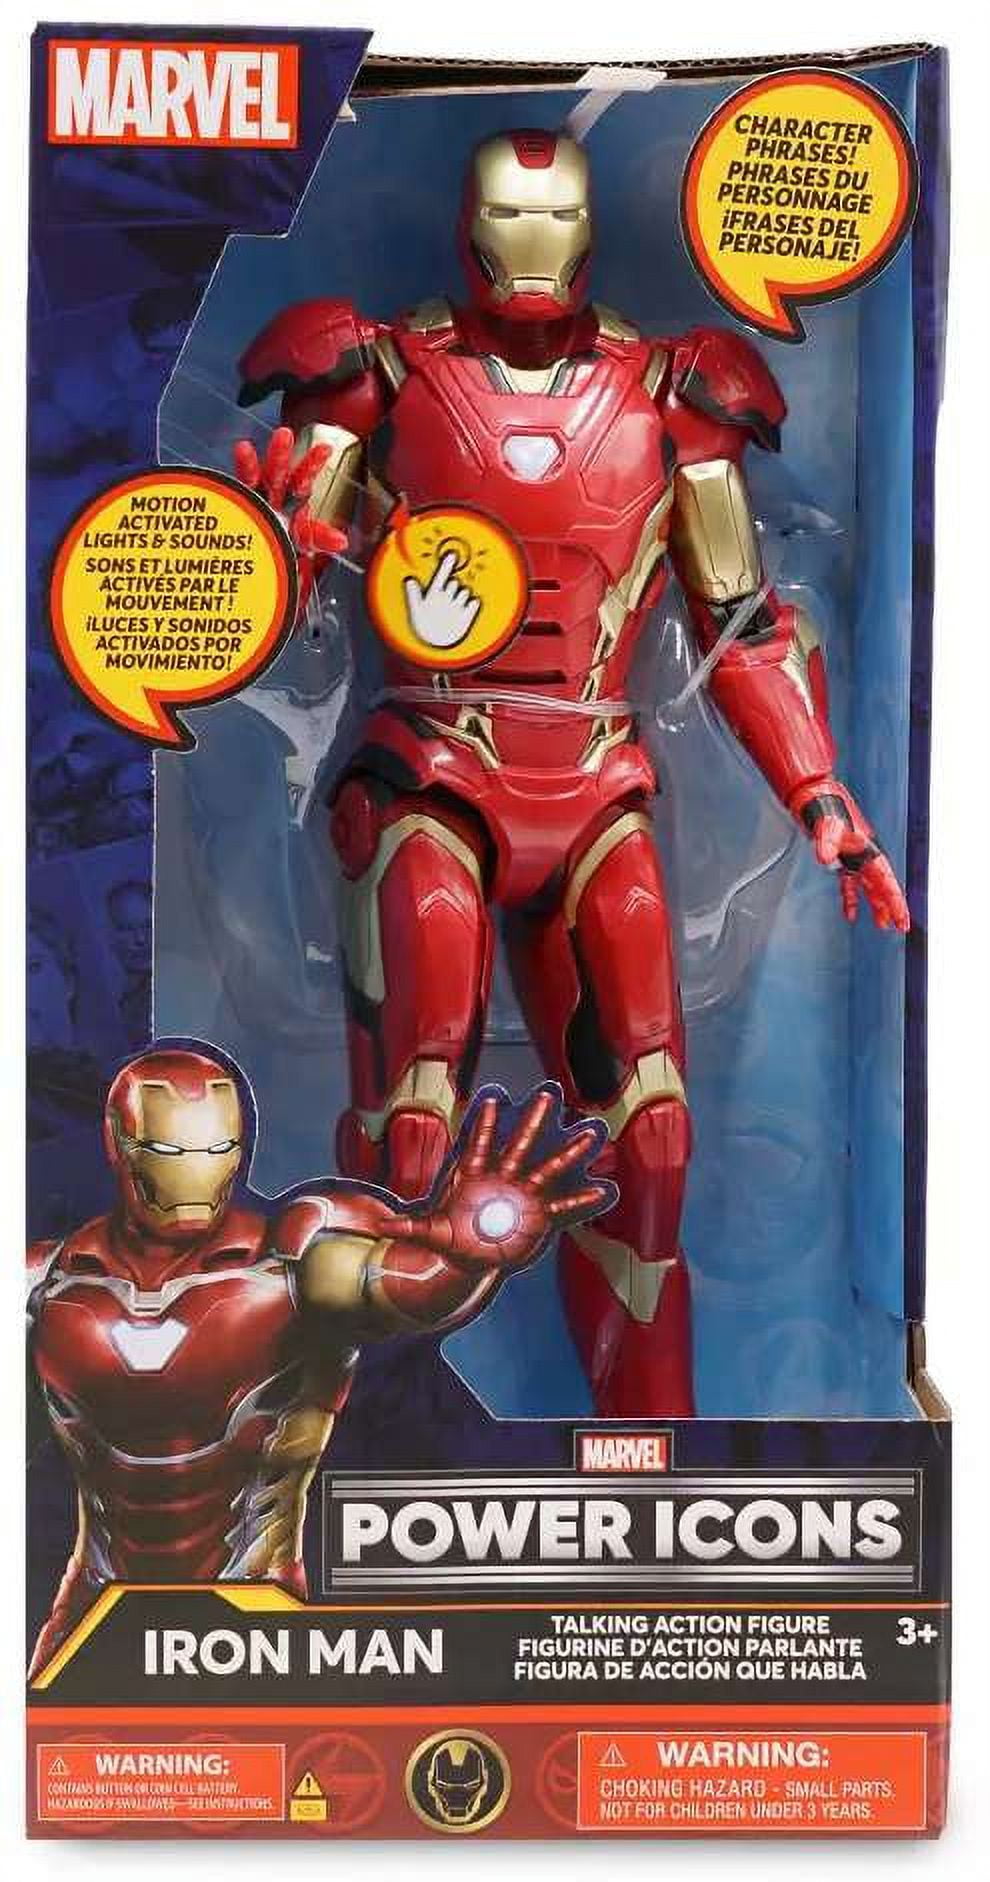 Avengers Iron Man Figura De Accion Marvel Nueva Y Original